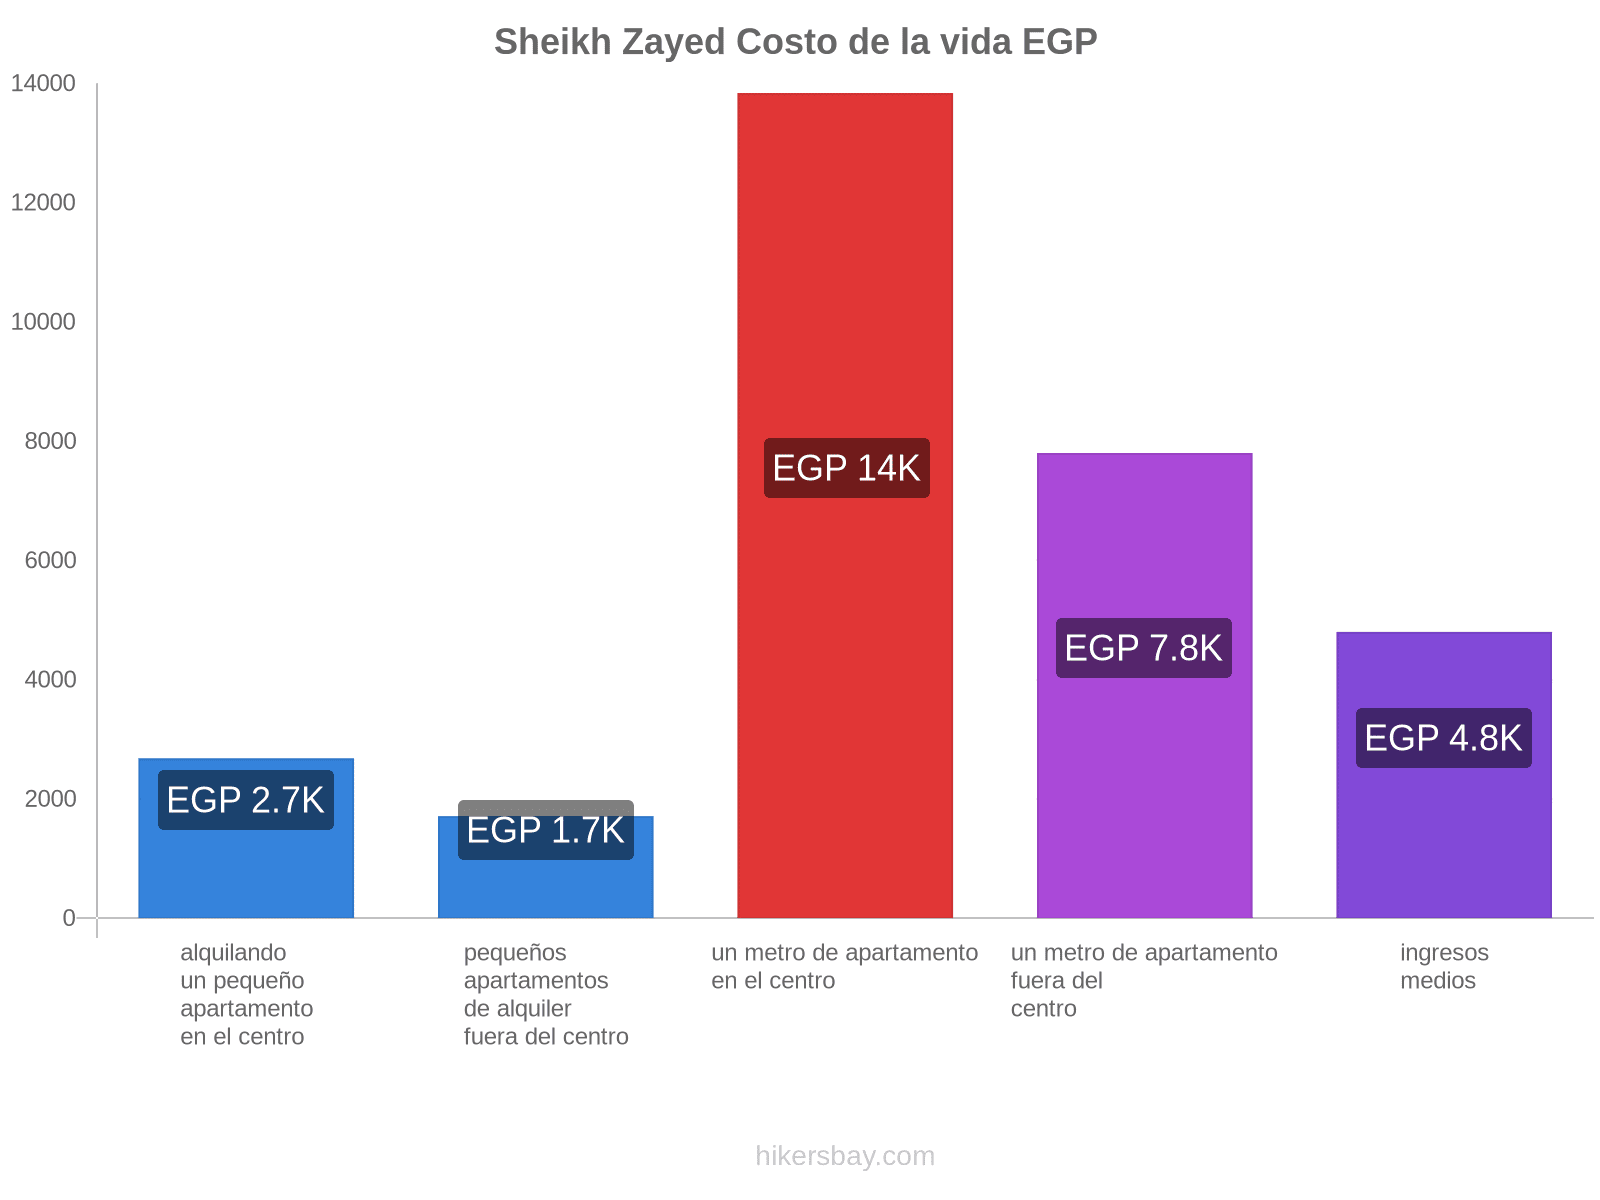 Sheikh Zayed costo de la vida hikersbay.com